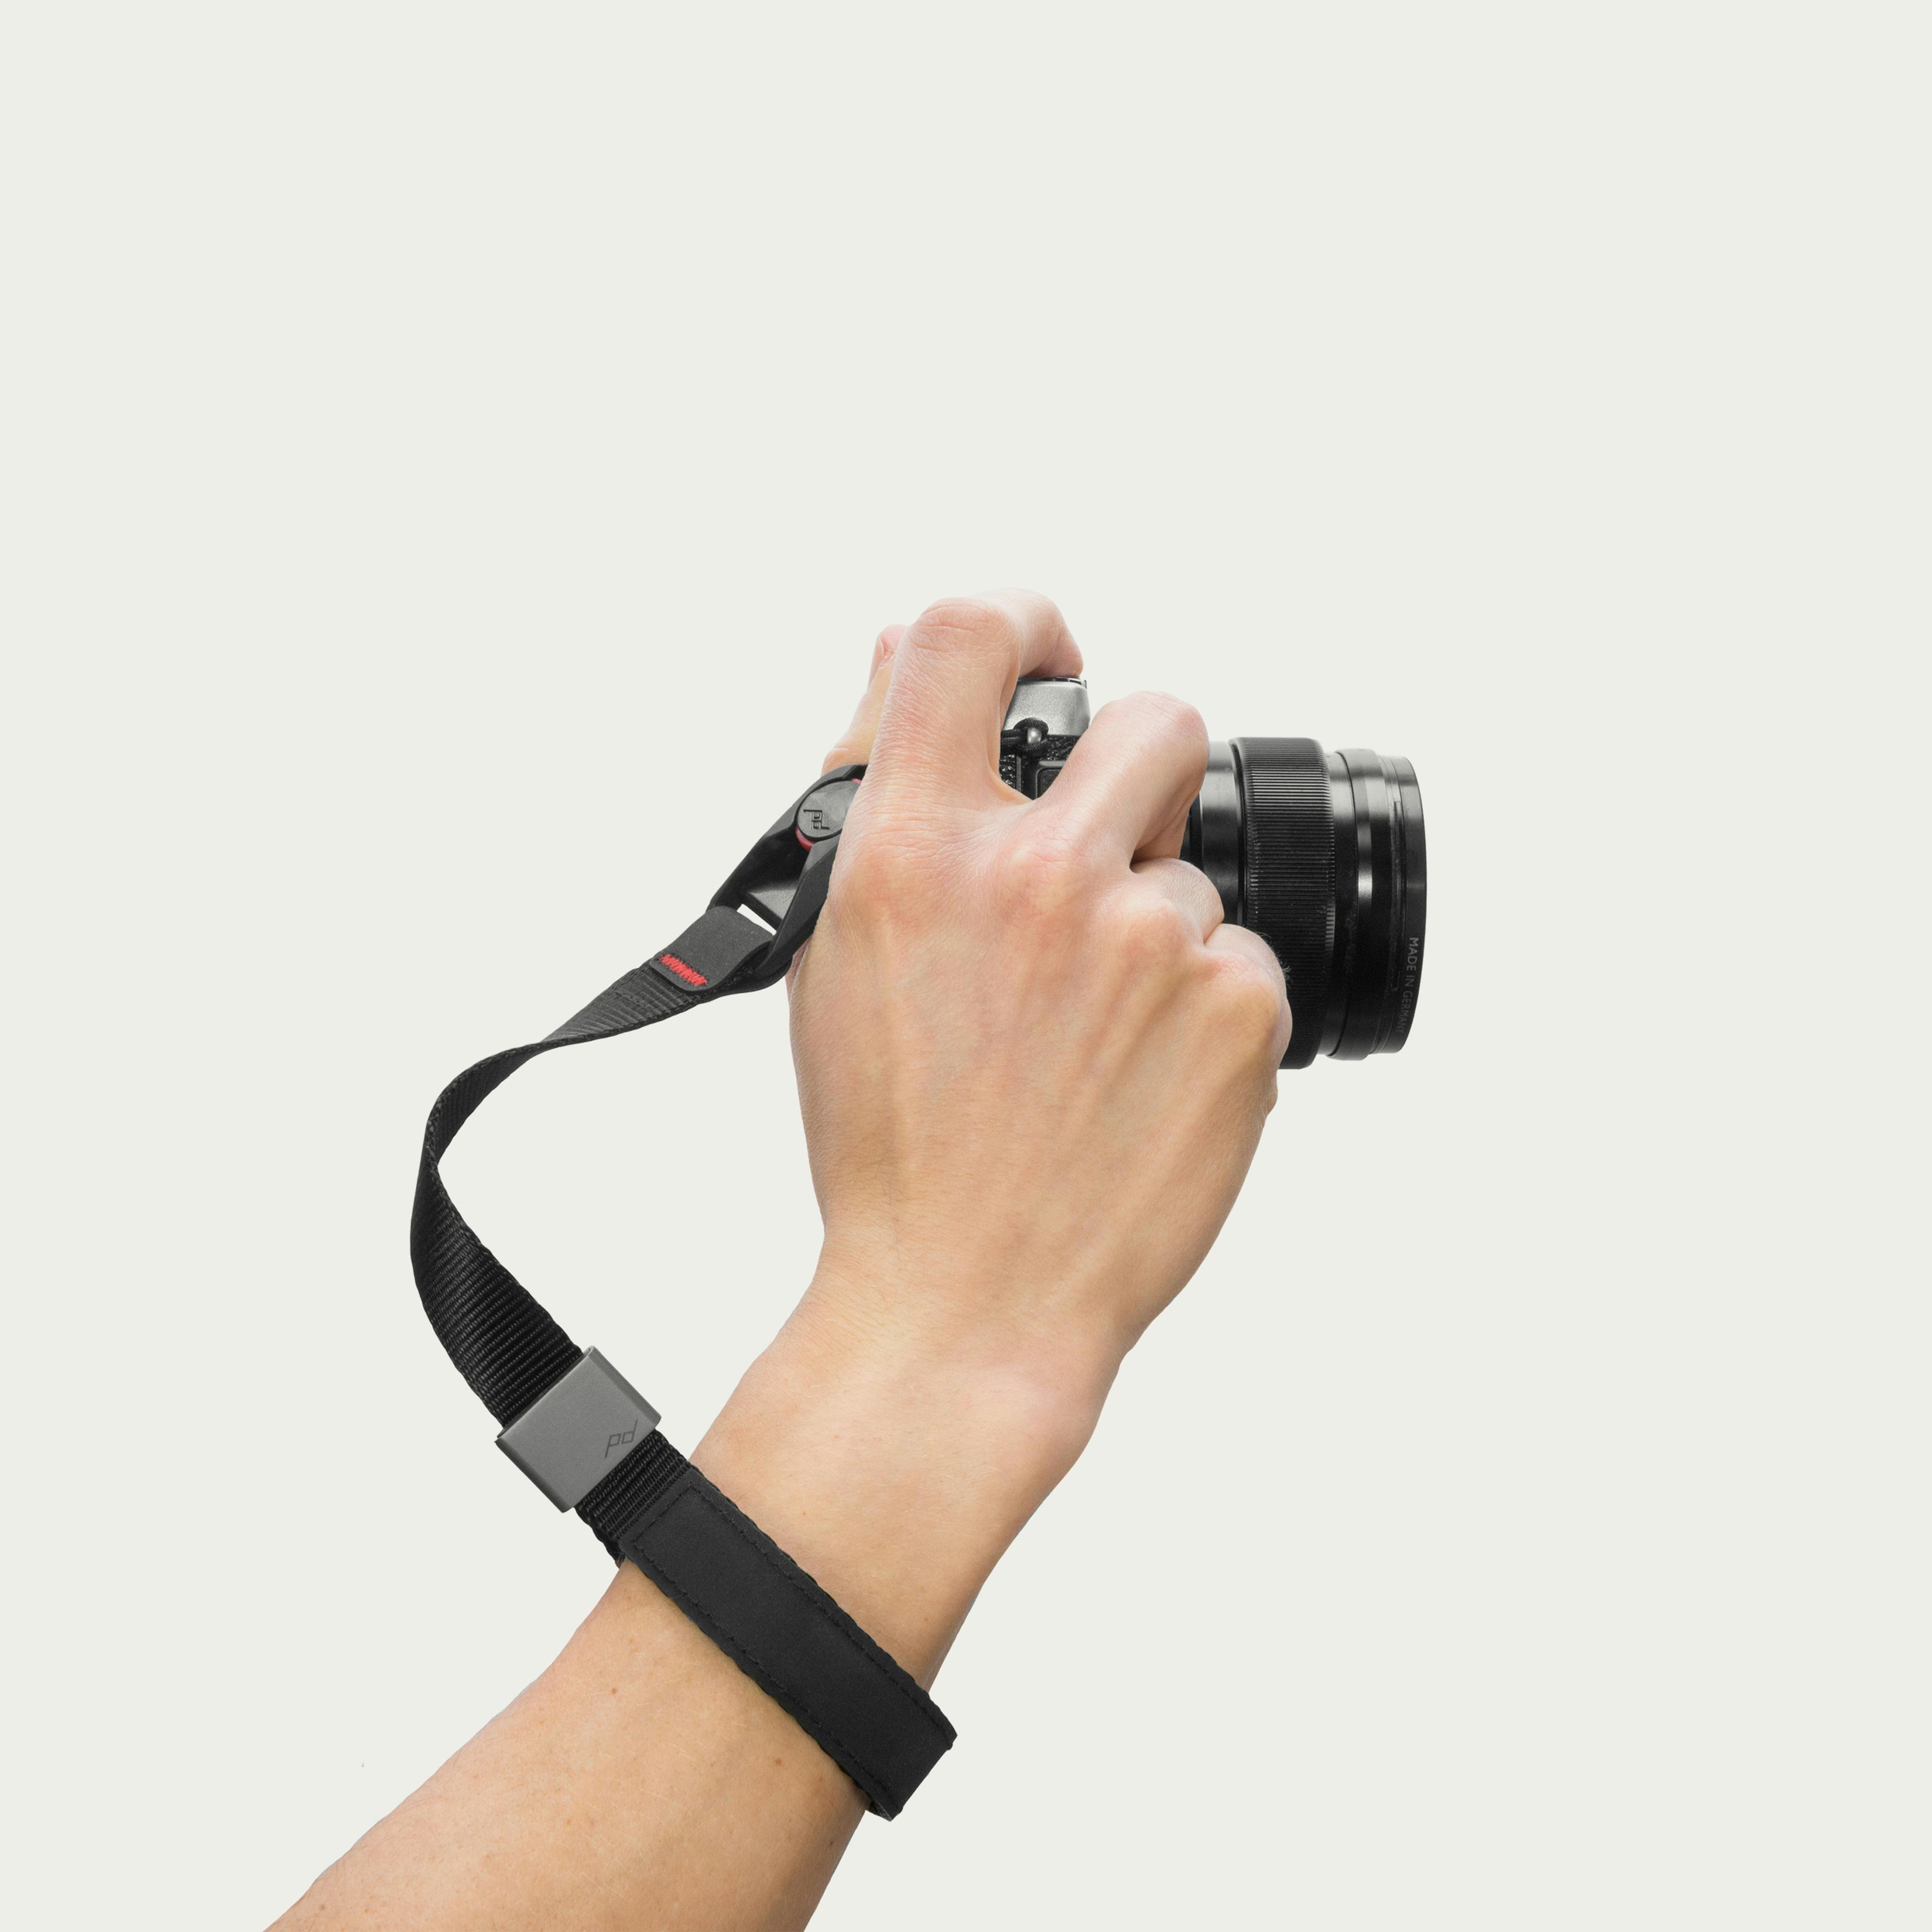 Cuff Camera Wrist Strap - Black